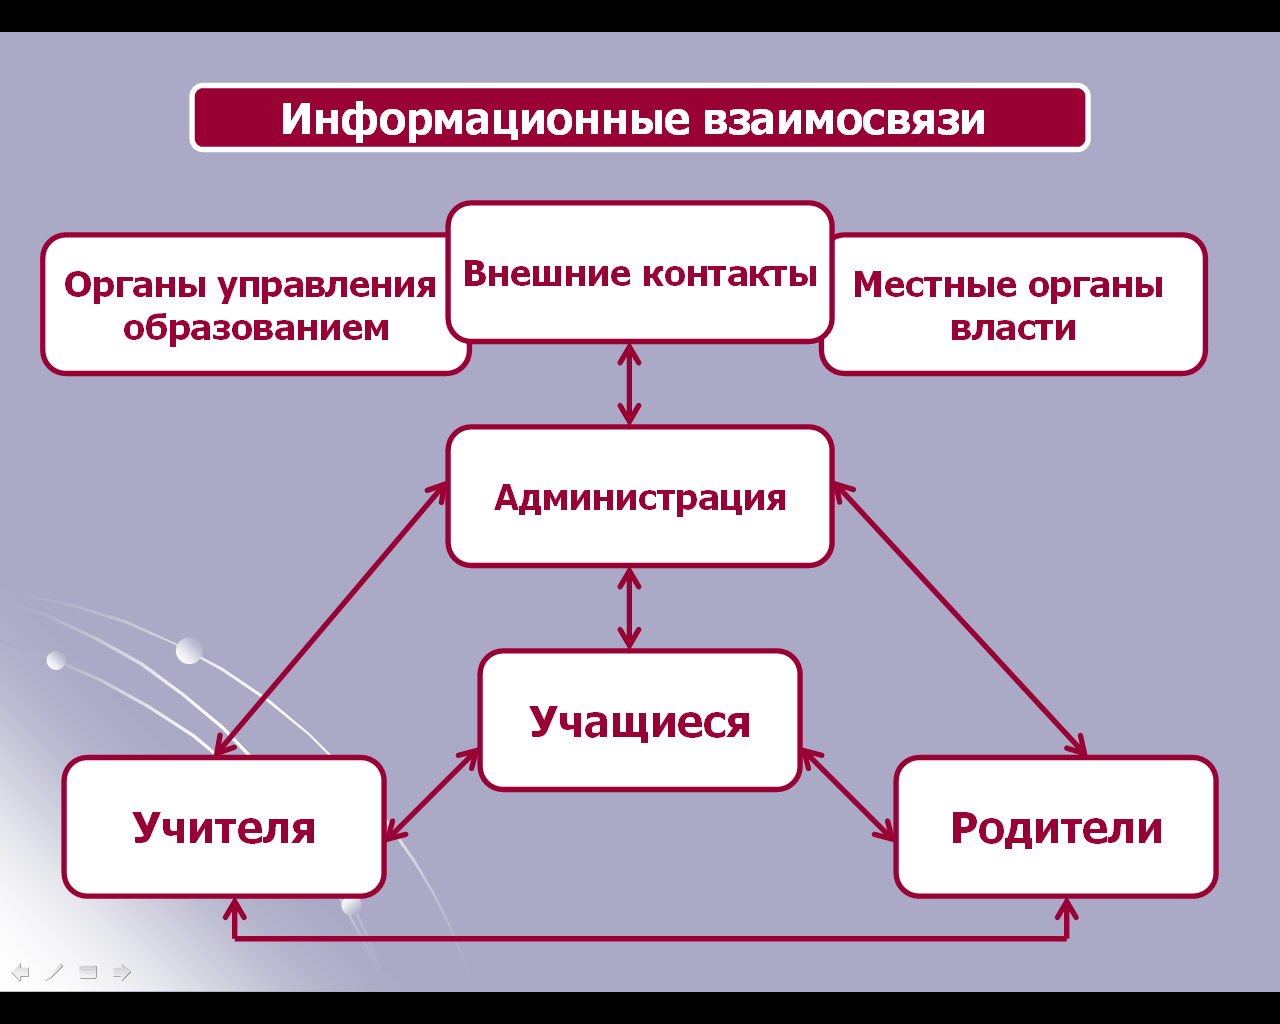 Программа развития единой информационно-образовательной системы